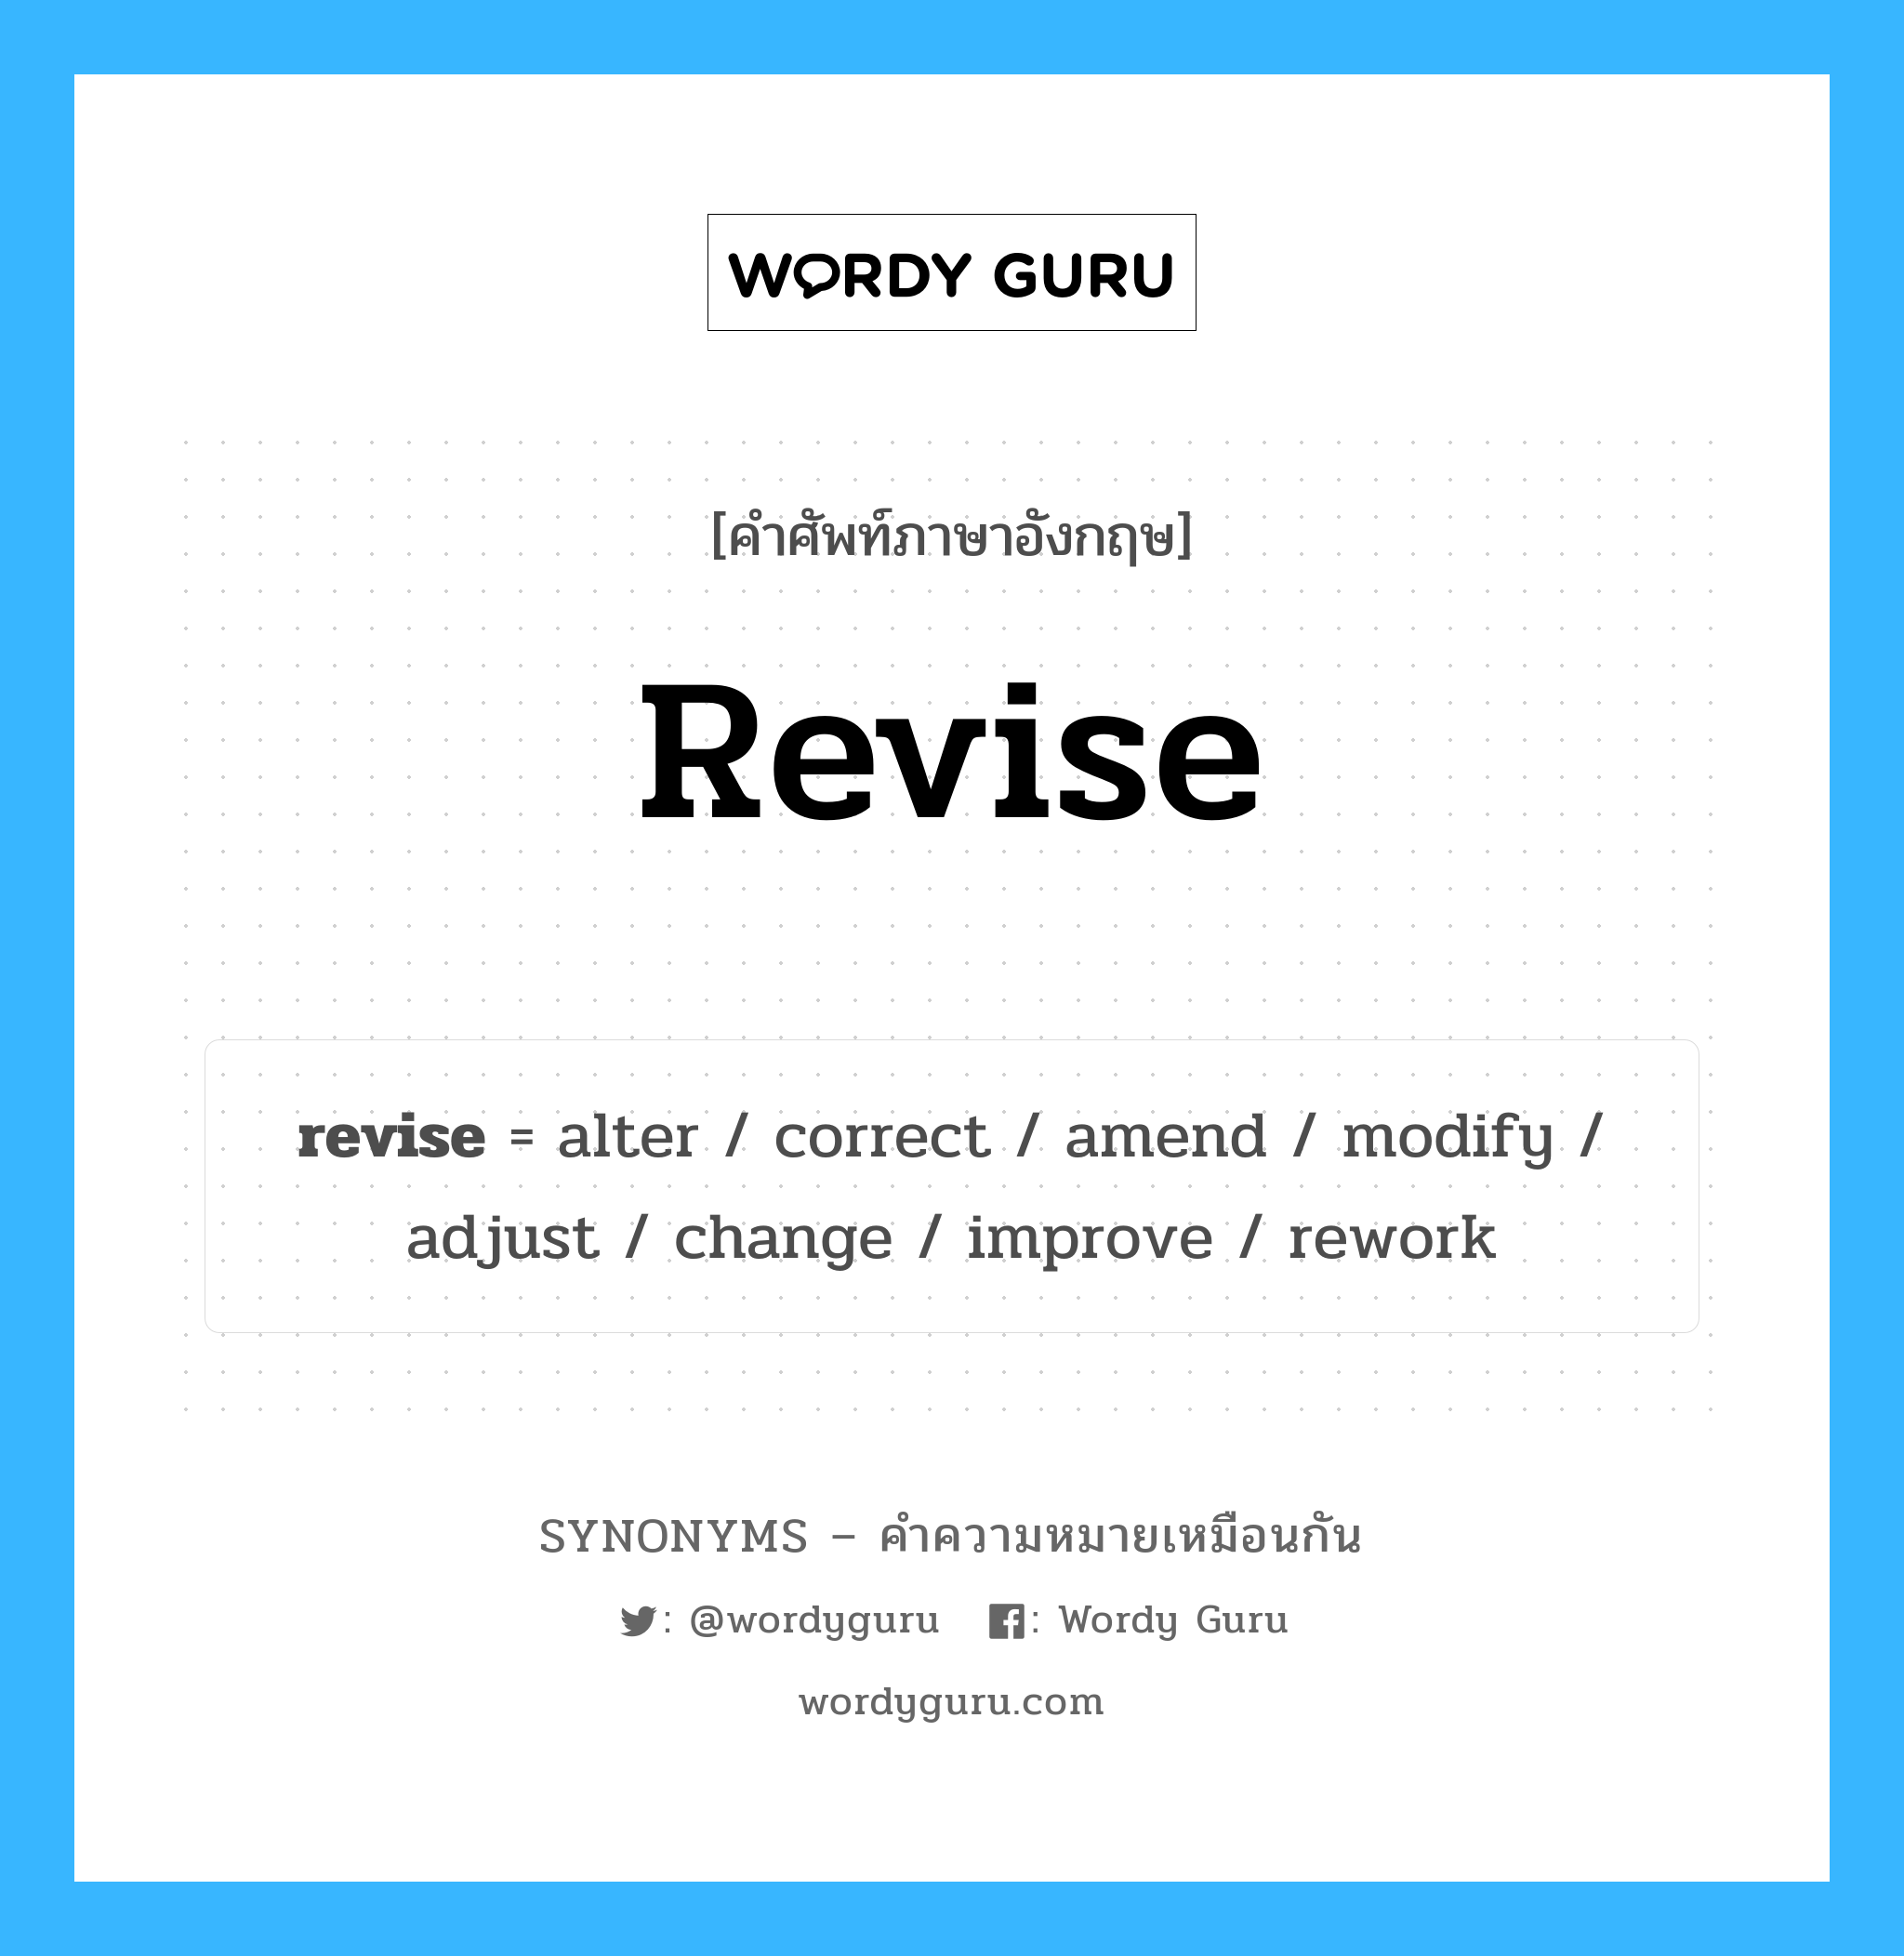 adjust เป็นหนึ่งใน revise และมีคำอื่น ๆ อีกดังนี้, คำศัพท์ภาษาอังกฤษ adjust ความหมายคล้ายกันกับ revise แปลว่า ปรับ หมวด revise